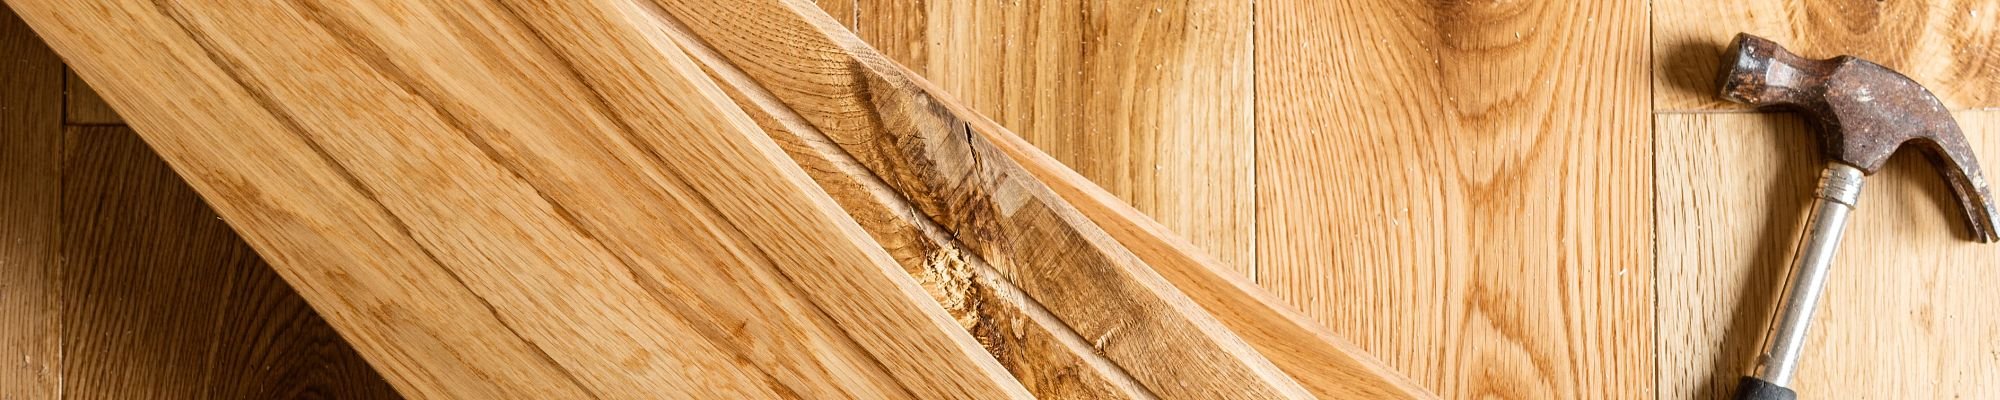 Hammer on wood planks